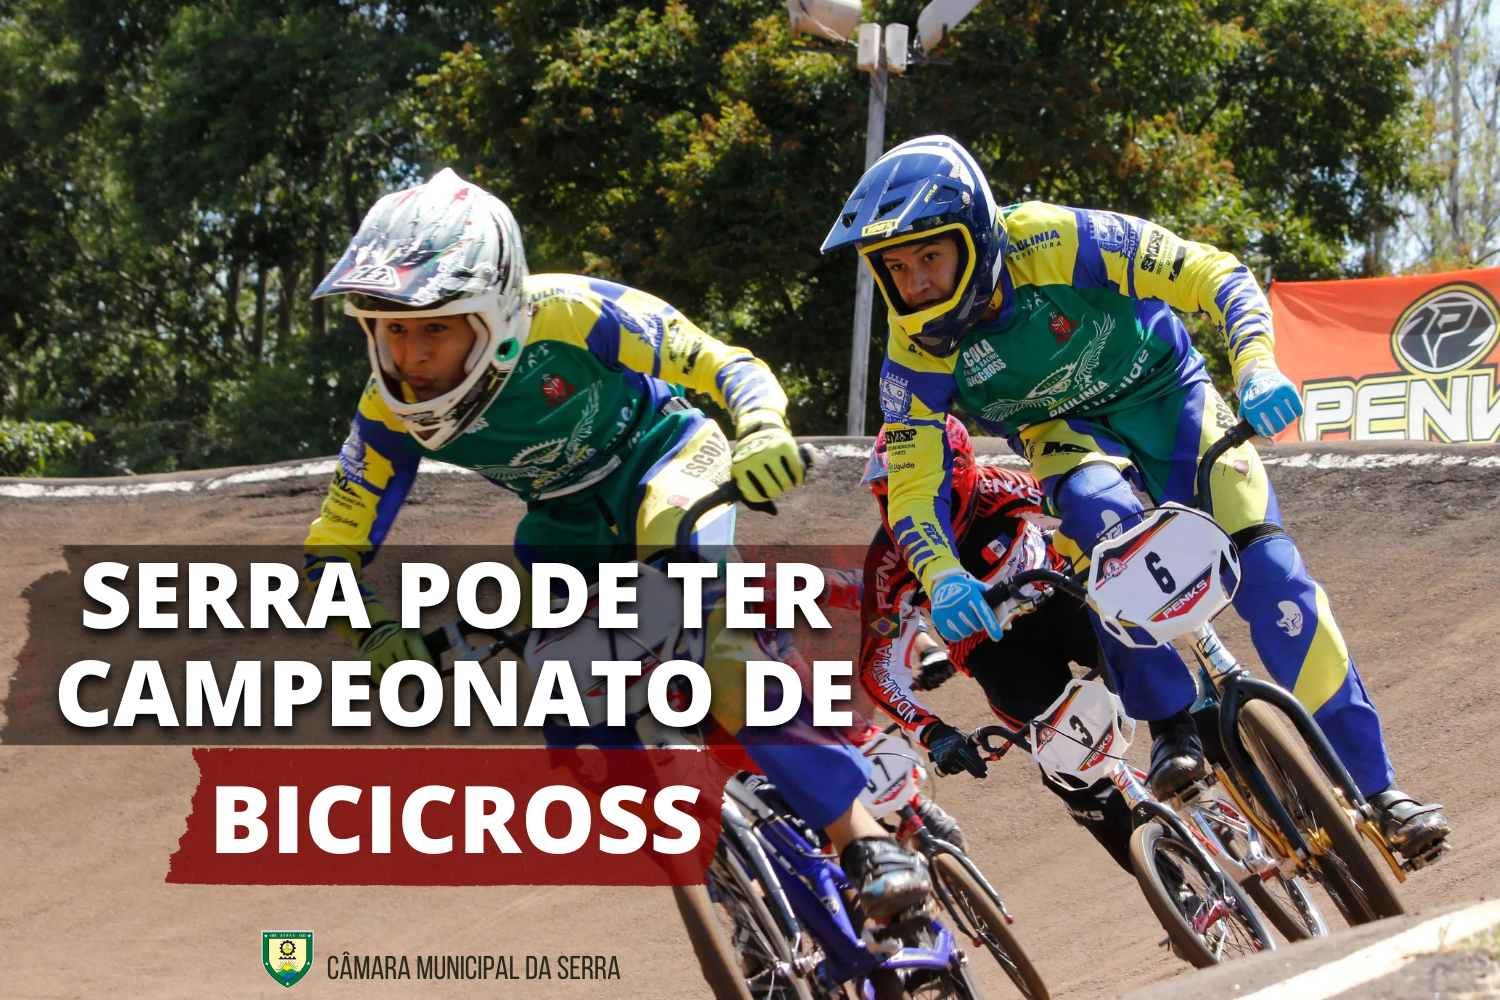 Serra pode ter Campeonato de Bicicross.